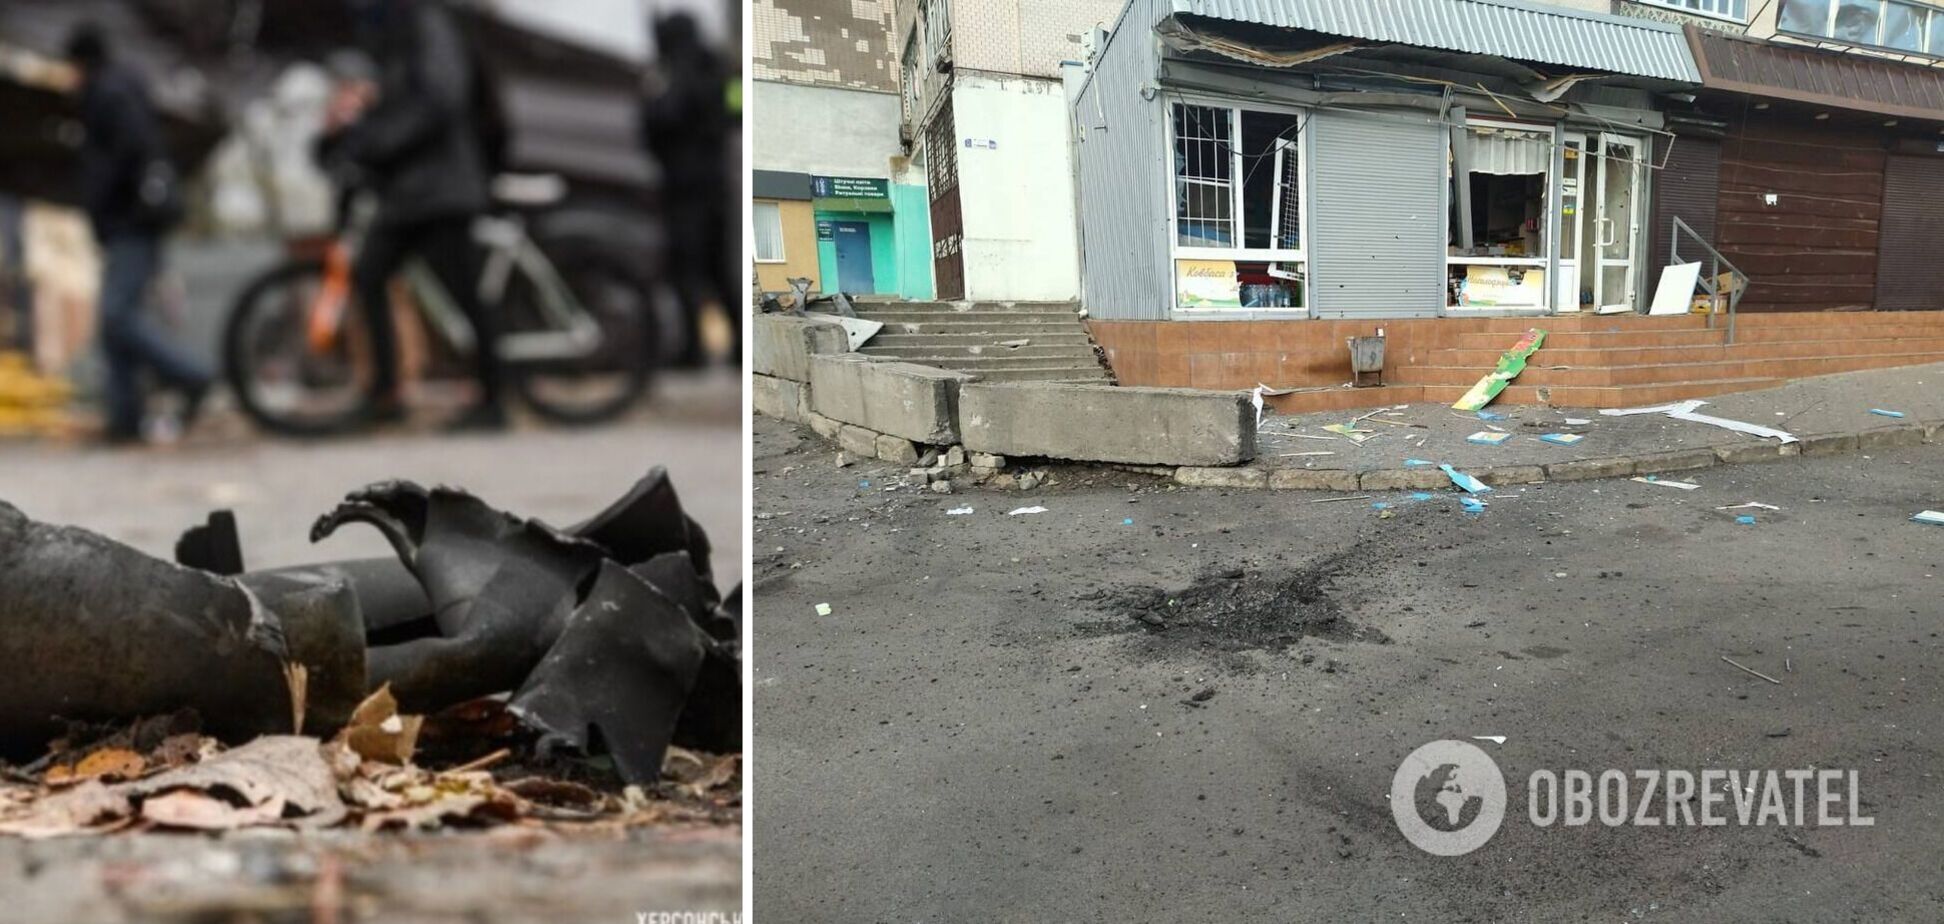 Снаряди влучили у продуктовий магазин: у Бериславі під час російського обстрілу загинуло двоє людей, ще трьох поранено. Фото 